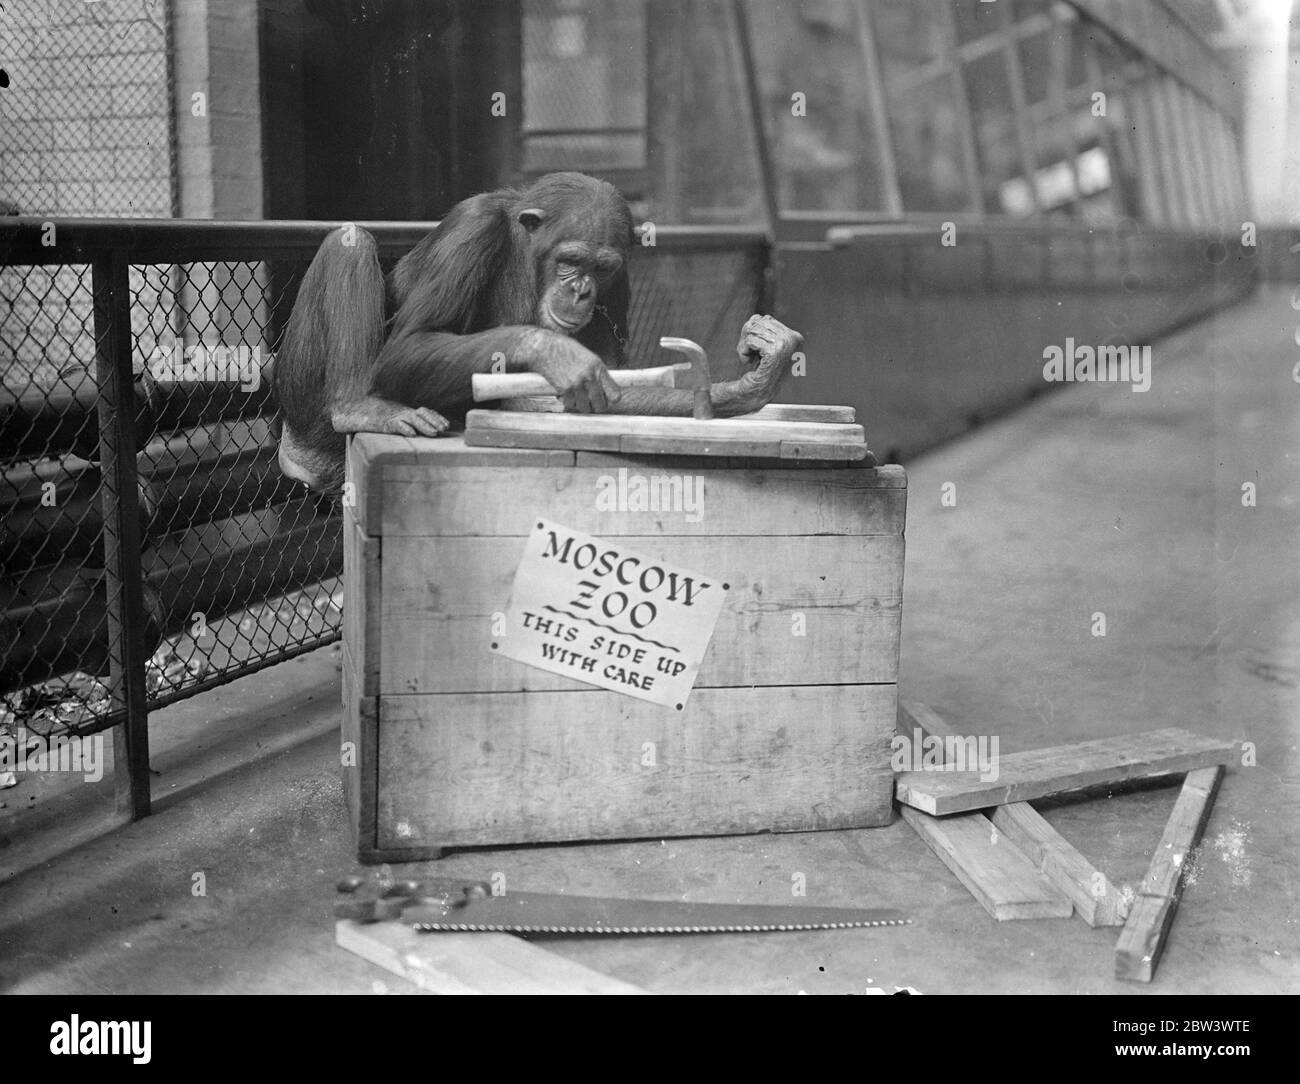 Mary Anne fait ses propres quartiers de voyage London Zoo Chimpanzee aller à Moscou . Mary Anne , le chimpanzé du zoo de Londres qui fait partie du consigment à envoyer au zoo de Moscou en échange des animaux requis par Londres , s'assure que ses quartiers de voyage seront confortables . Elle prend la main dans sa propre affaire de voyage ! Photos : Mary Anne au travail avec un marteau . 17 août 1936 Banque D'Images